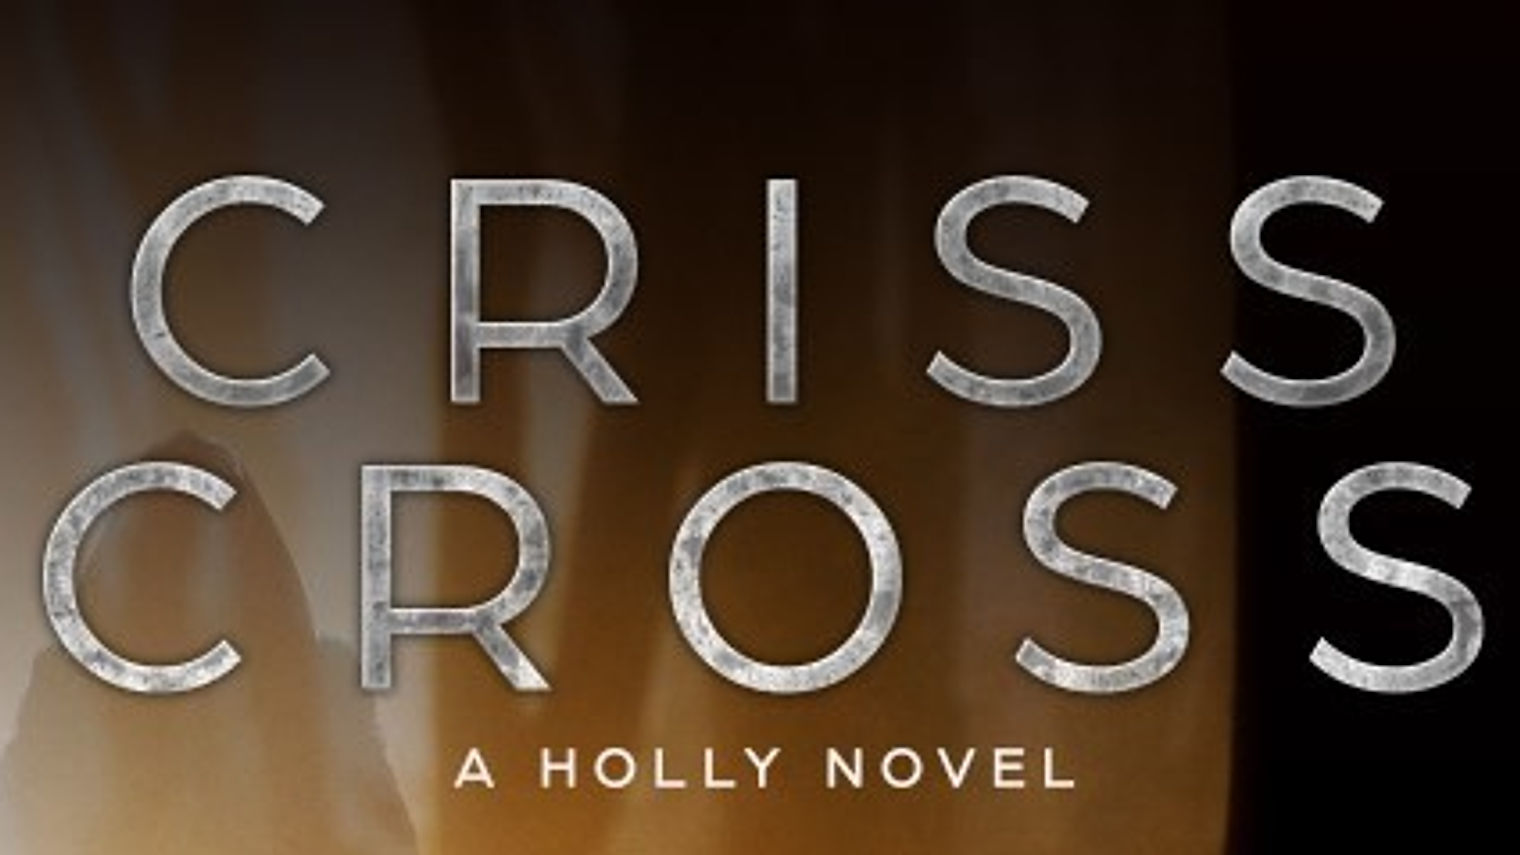 Criss cross book trailer